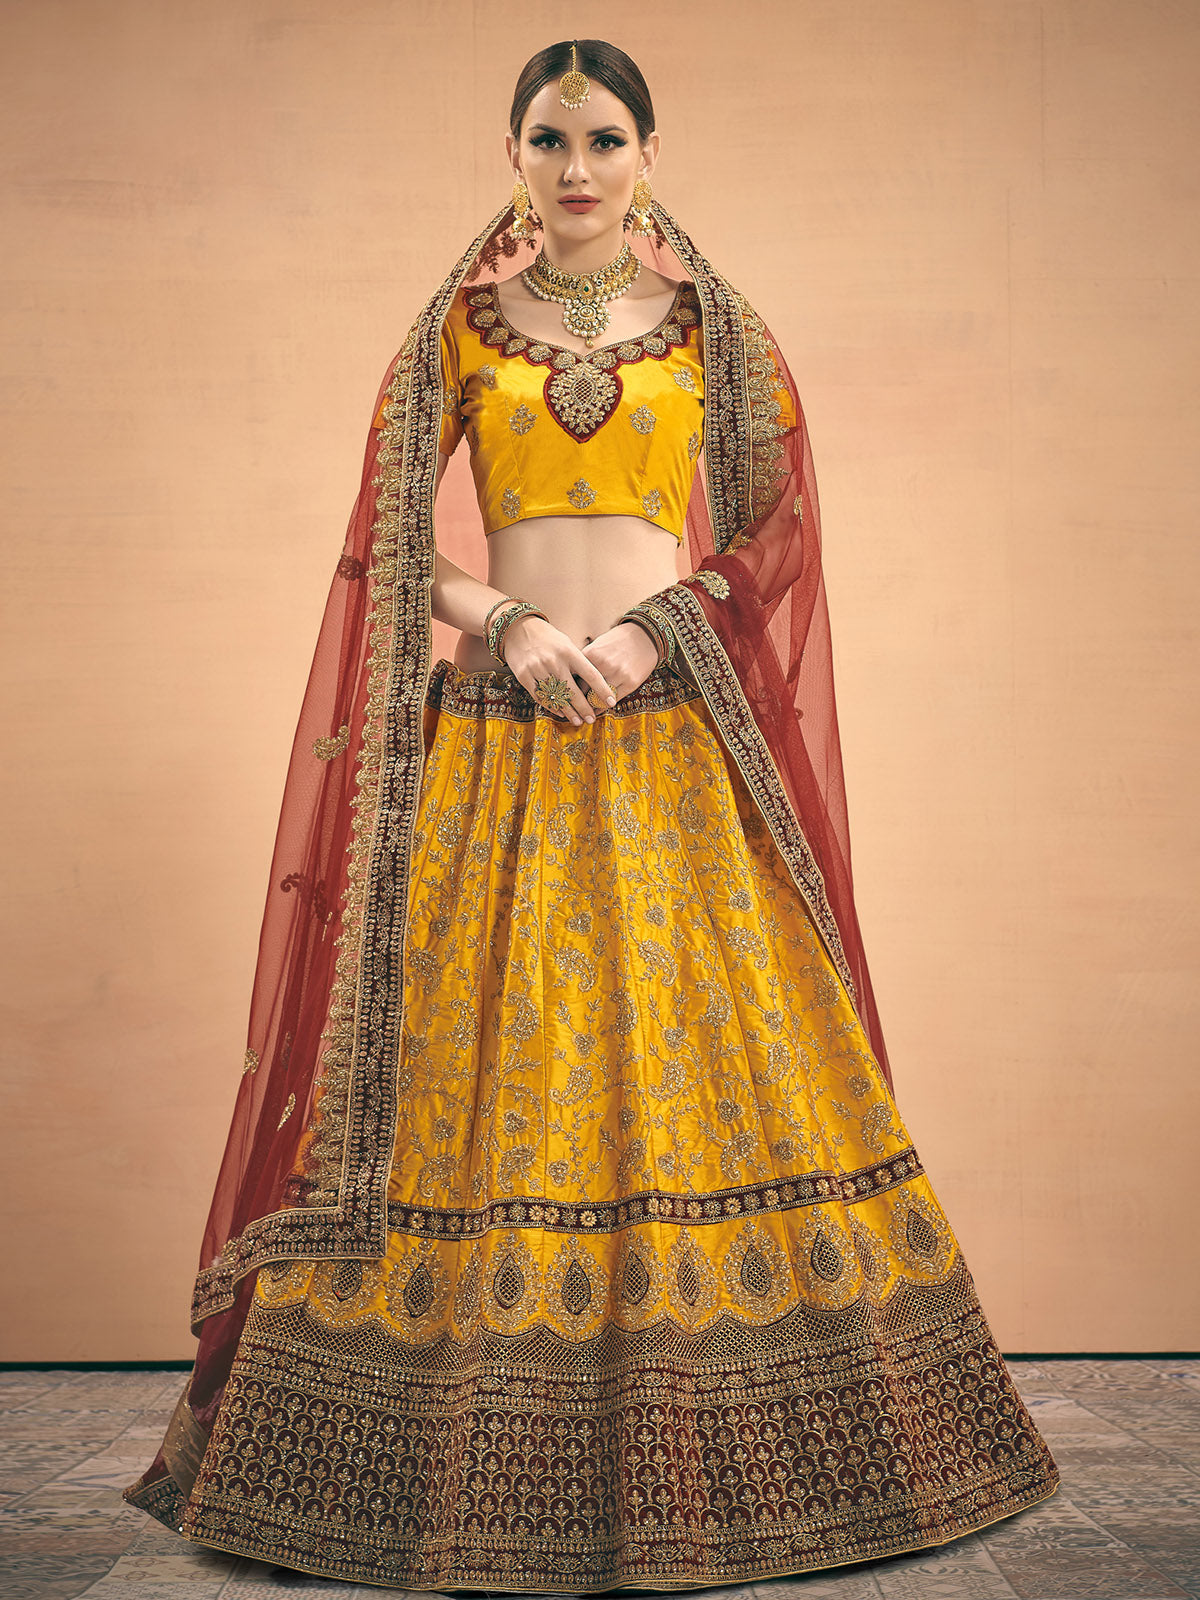 Mustard Yellow Zarkan Work Silk Semi Stitched Bridal Lehenga Choli With Net  Dupatta at Rs 14995 | ब्राइडल सिल्क लहंगा in Surat | ID: 2852842425297